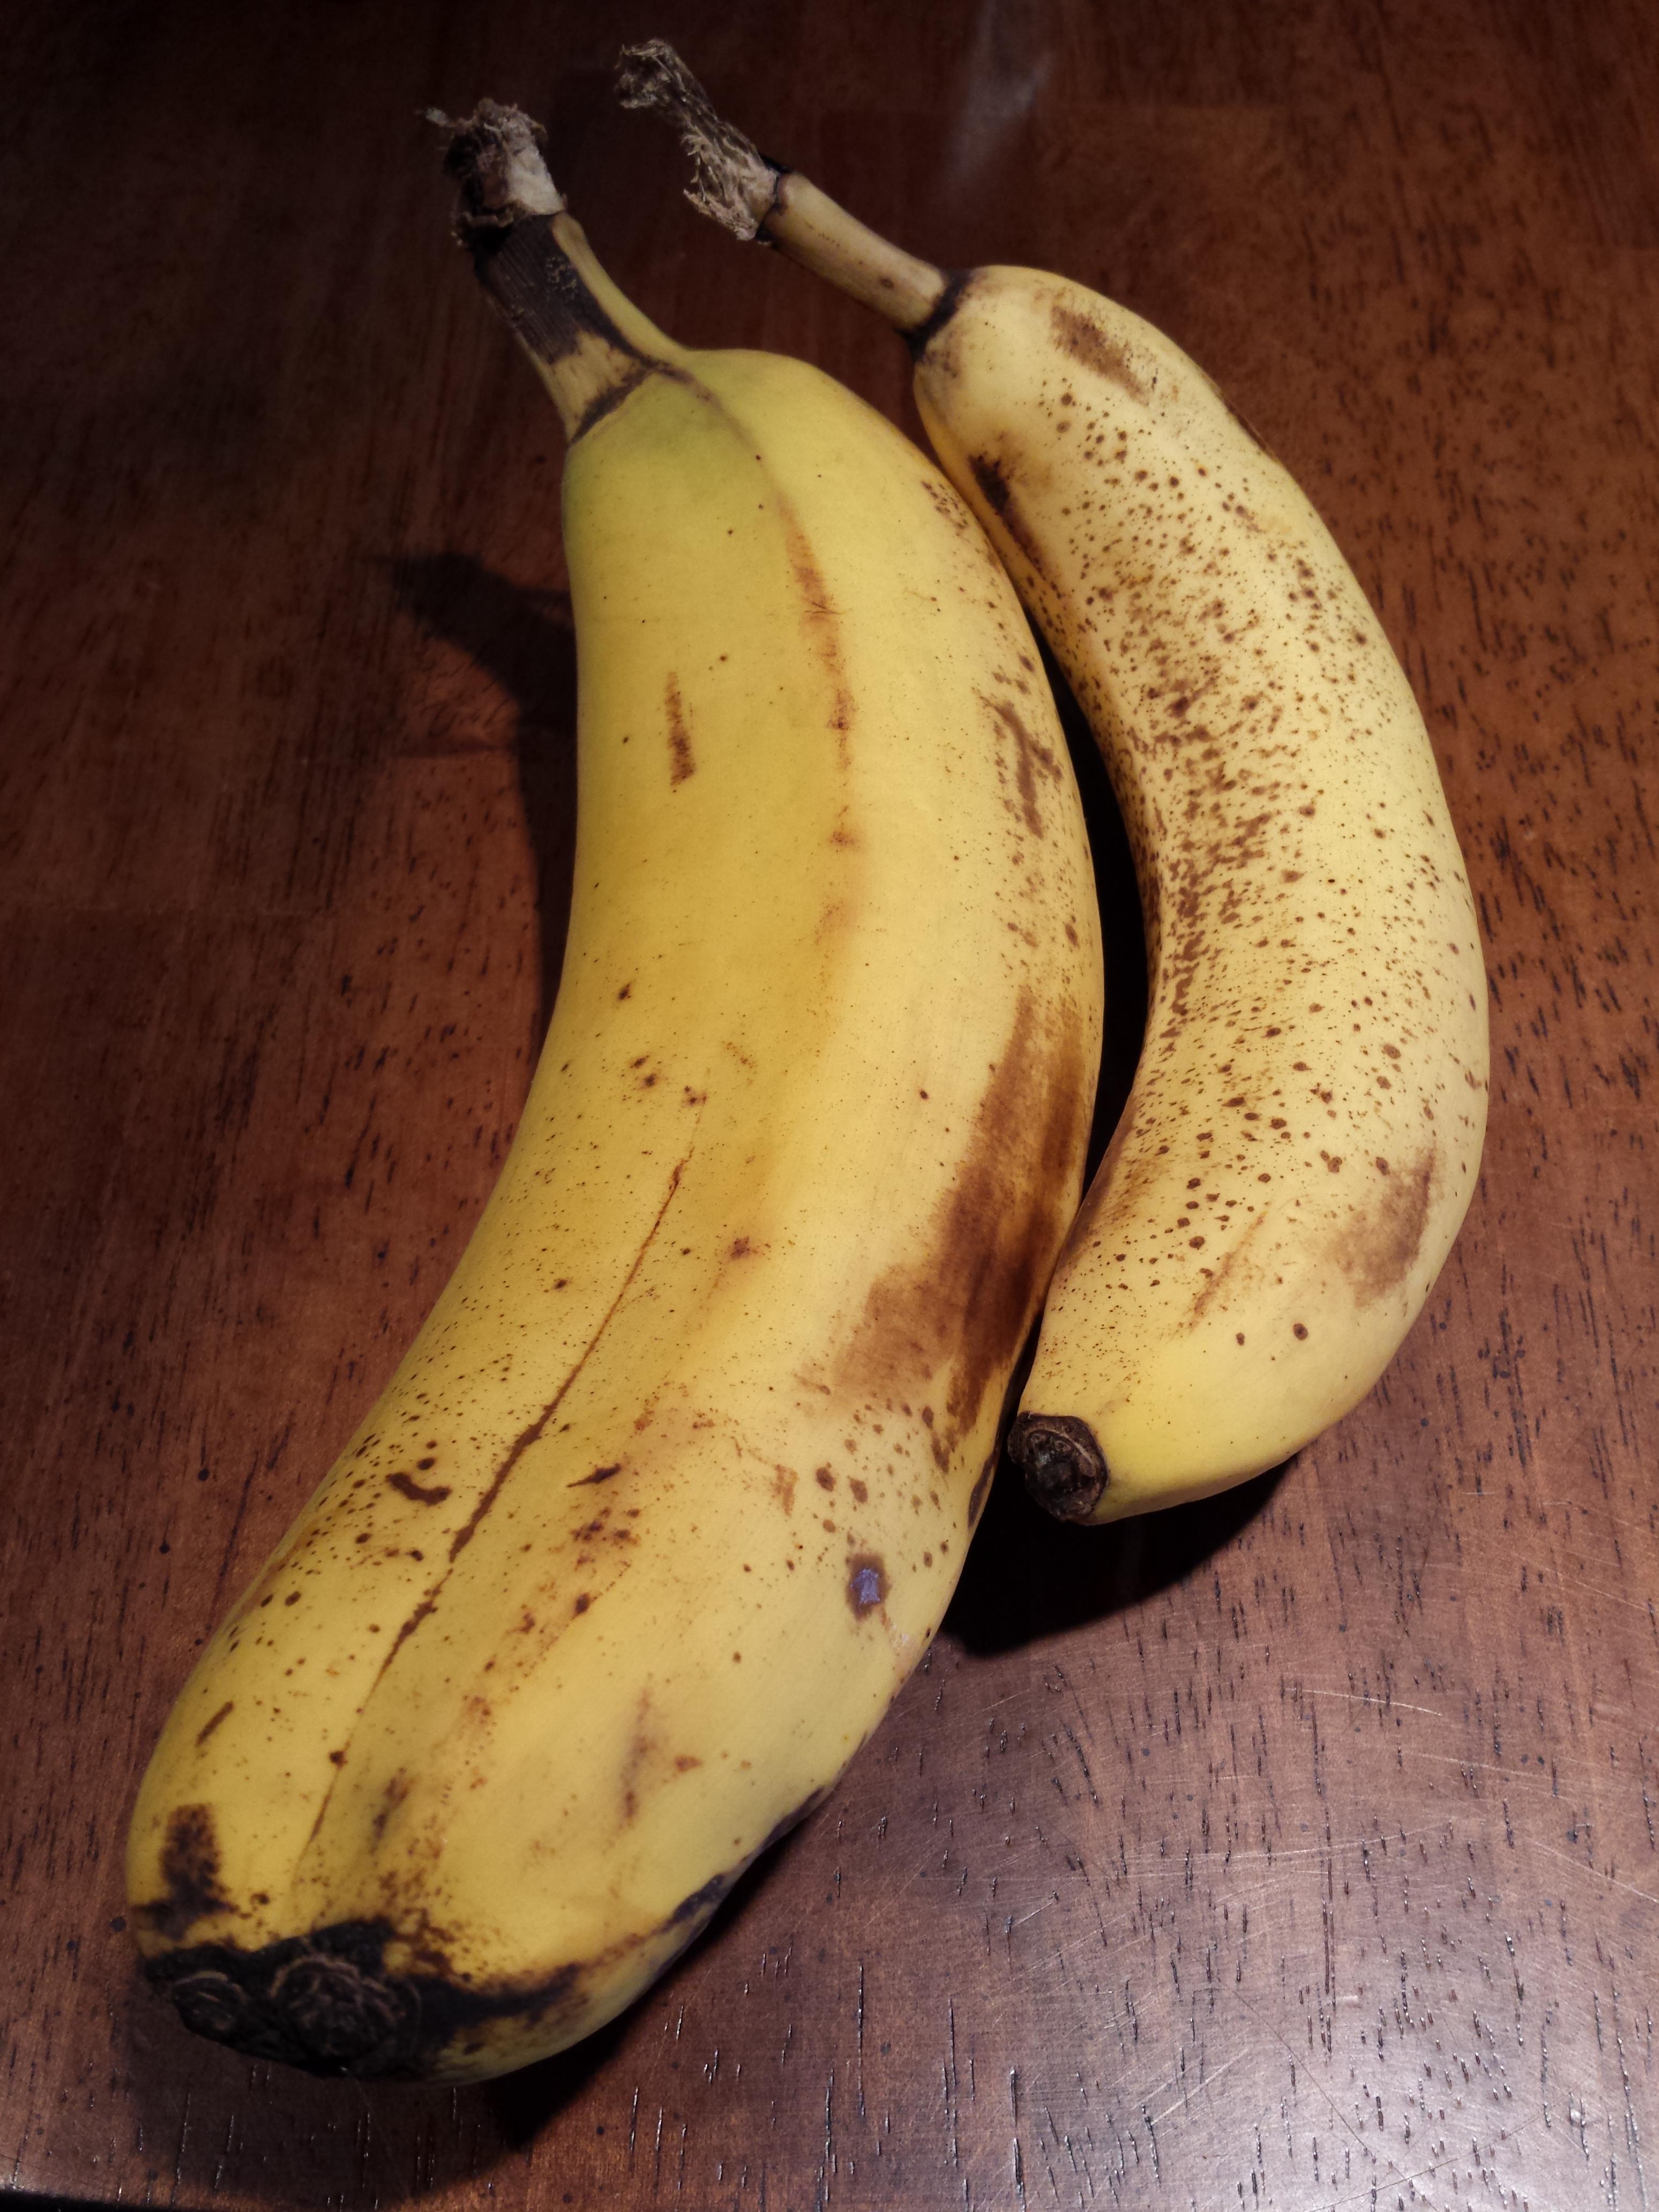 O banana mai putin obisnuita